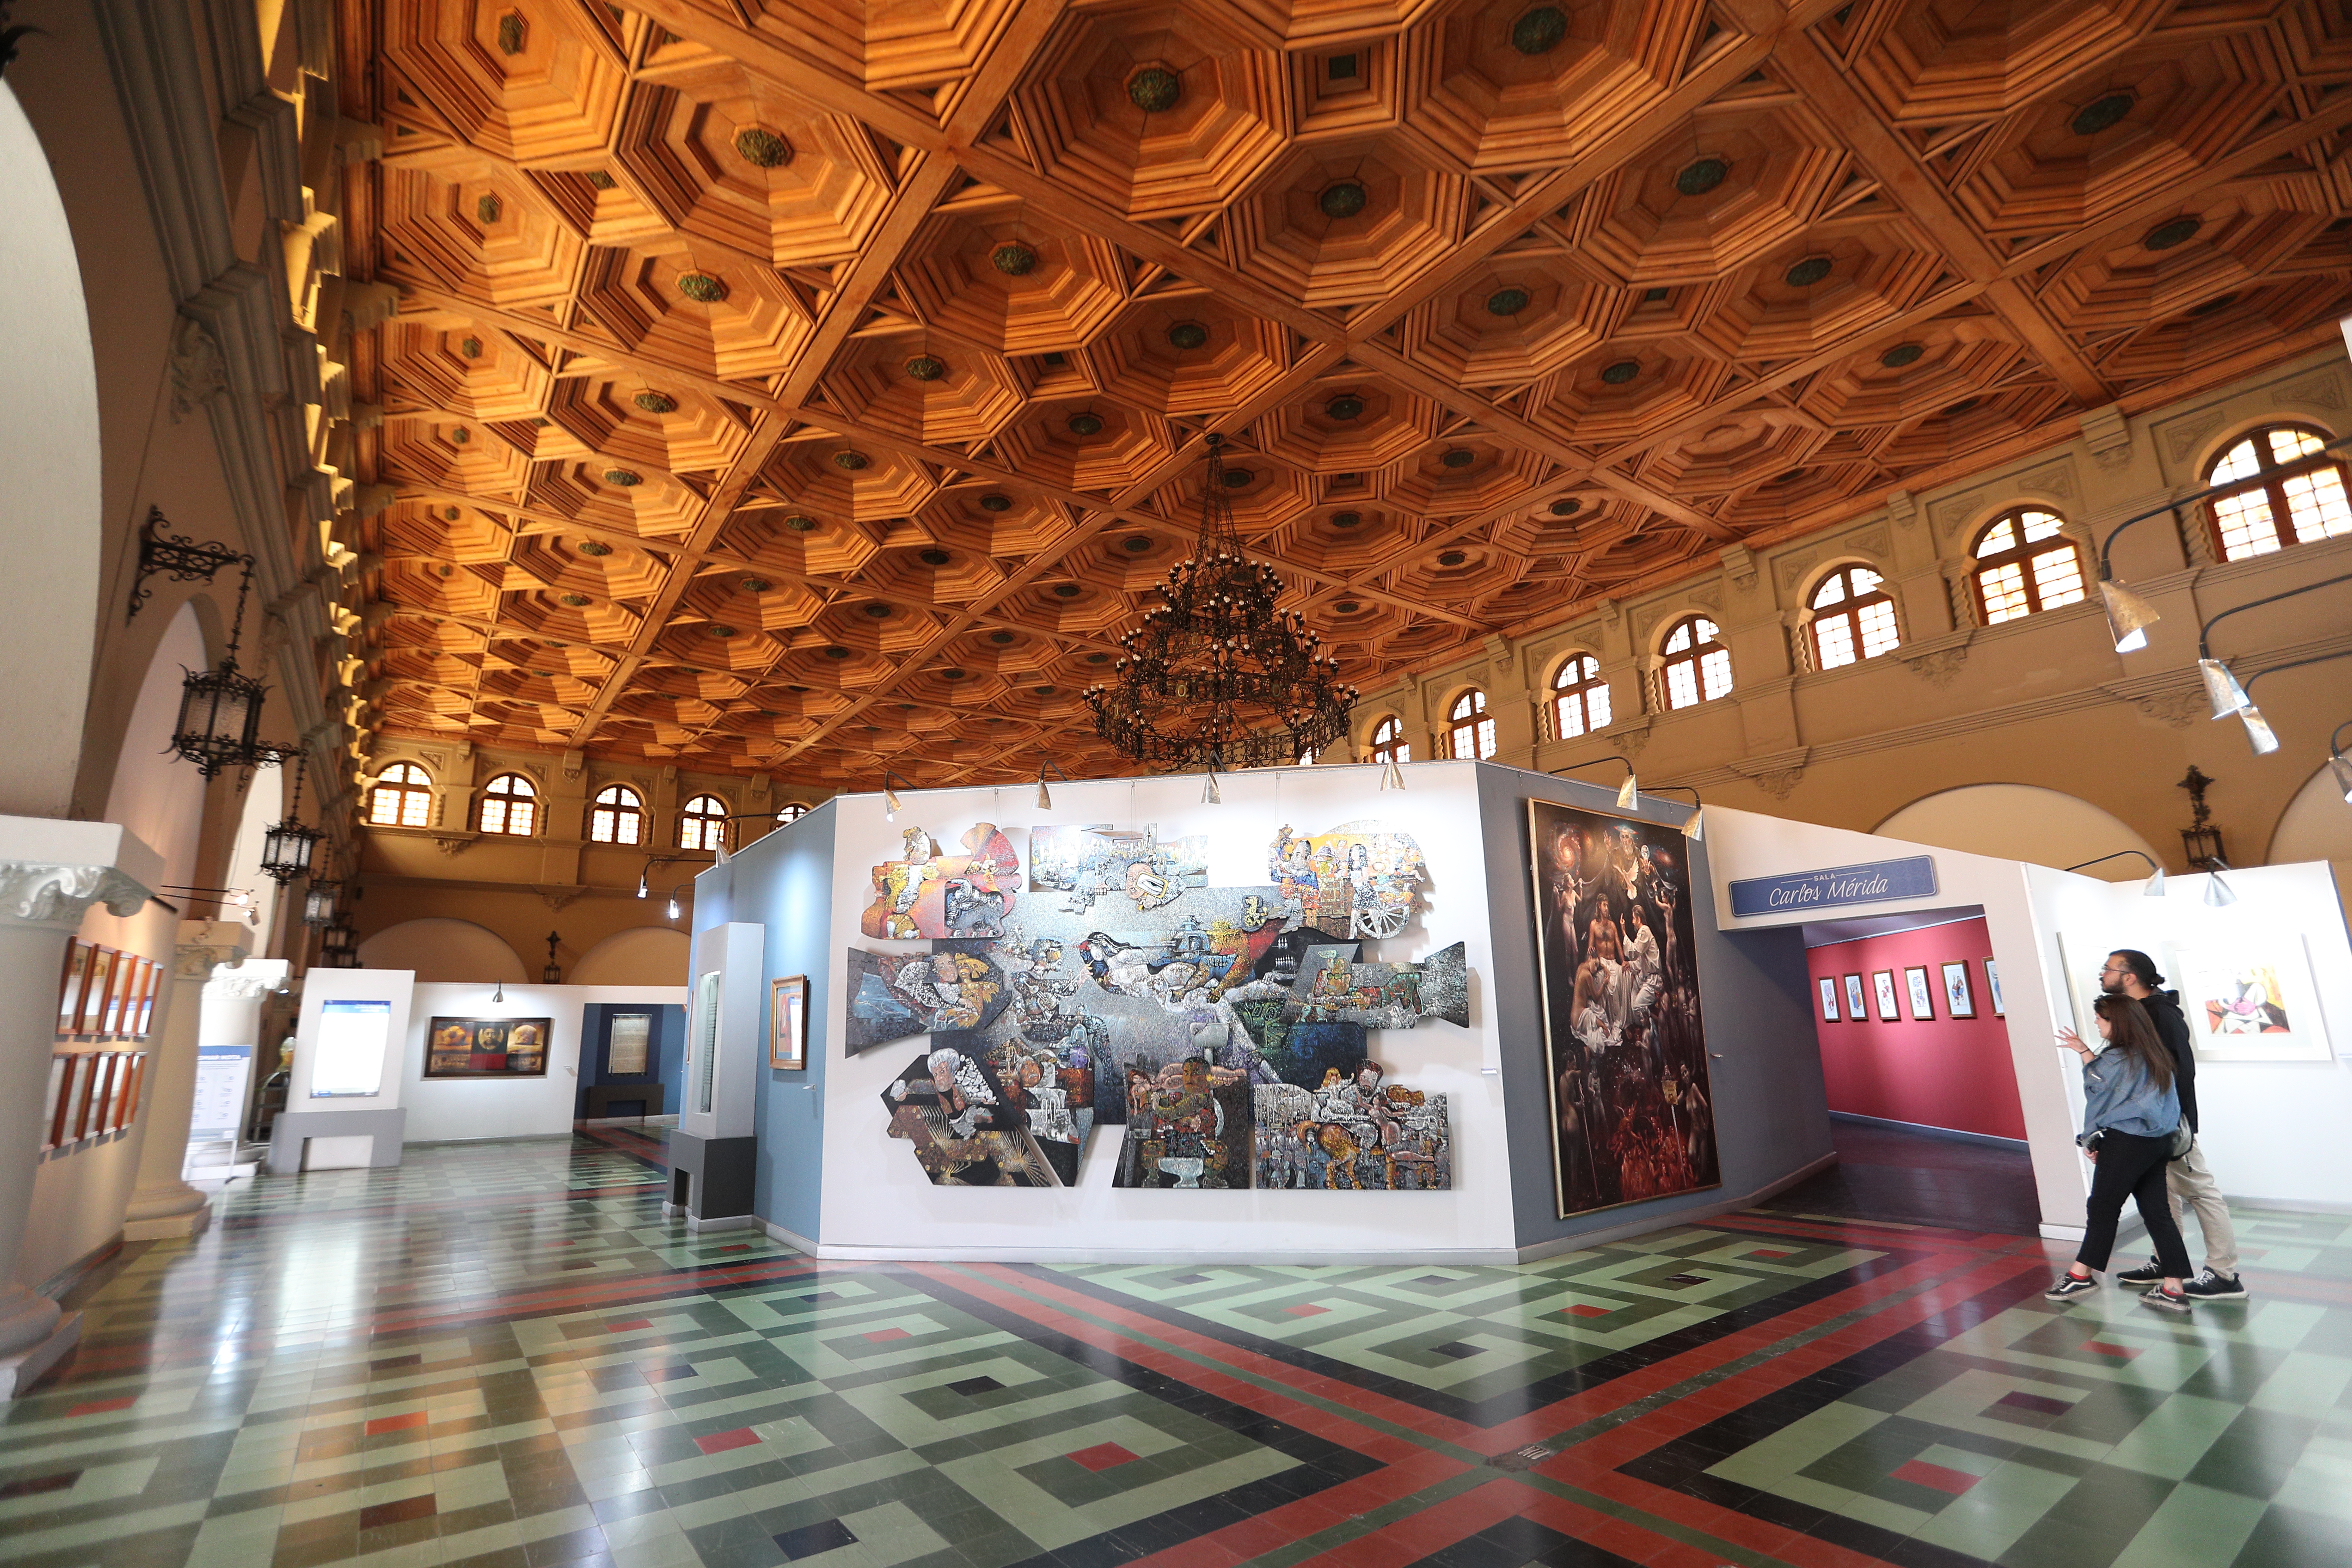 Museo de Arte Moderno y la exposición del artista Tamayo será parte de la muestra de la noche de los Museos el próximo sábado. (Foto Prensa Libre: Carlos Hernández Ovalle)